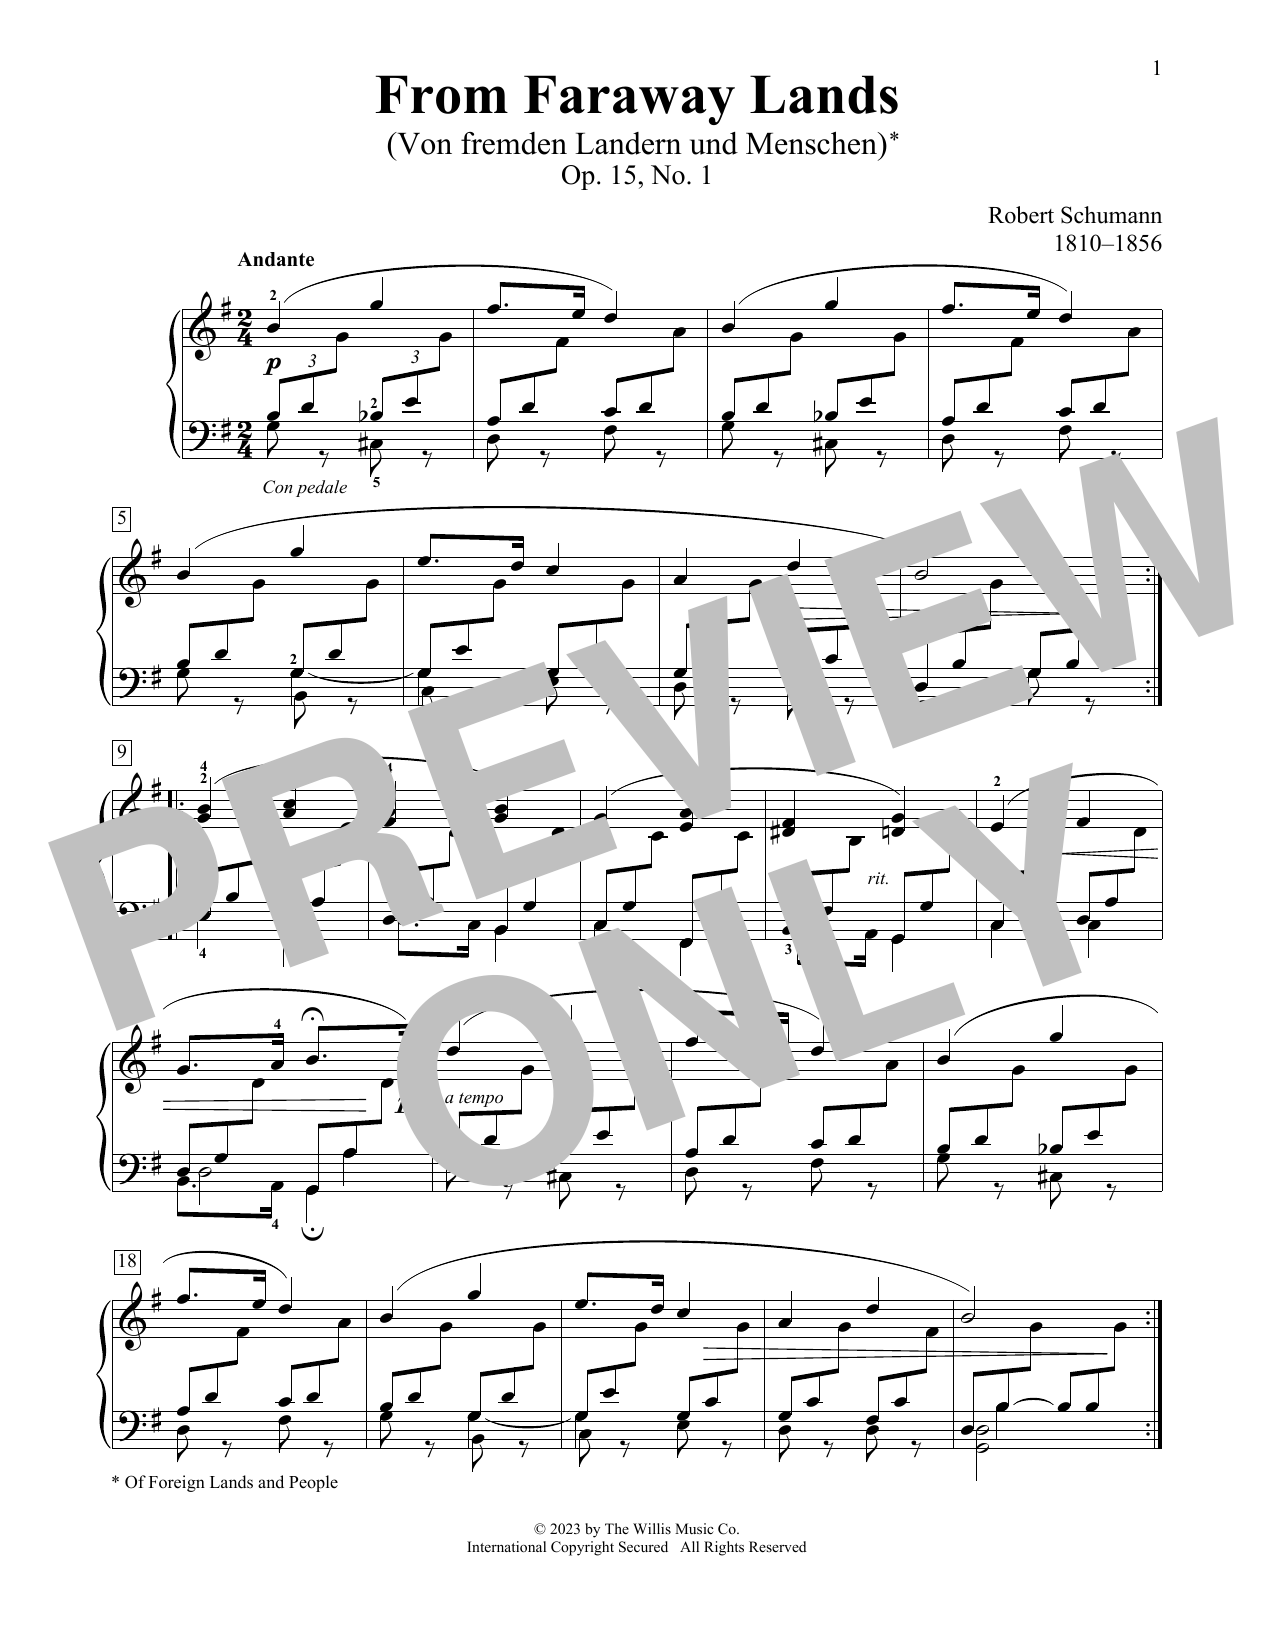 Robert Schumann From Faraway Lands, Op.15, No. 1 sheet music notes printable PDF score